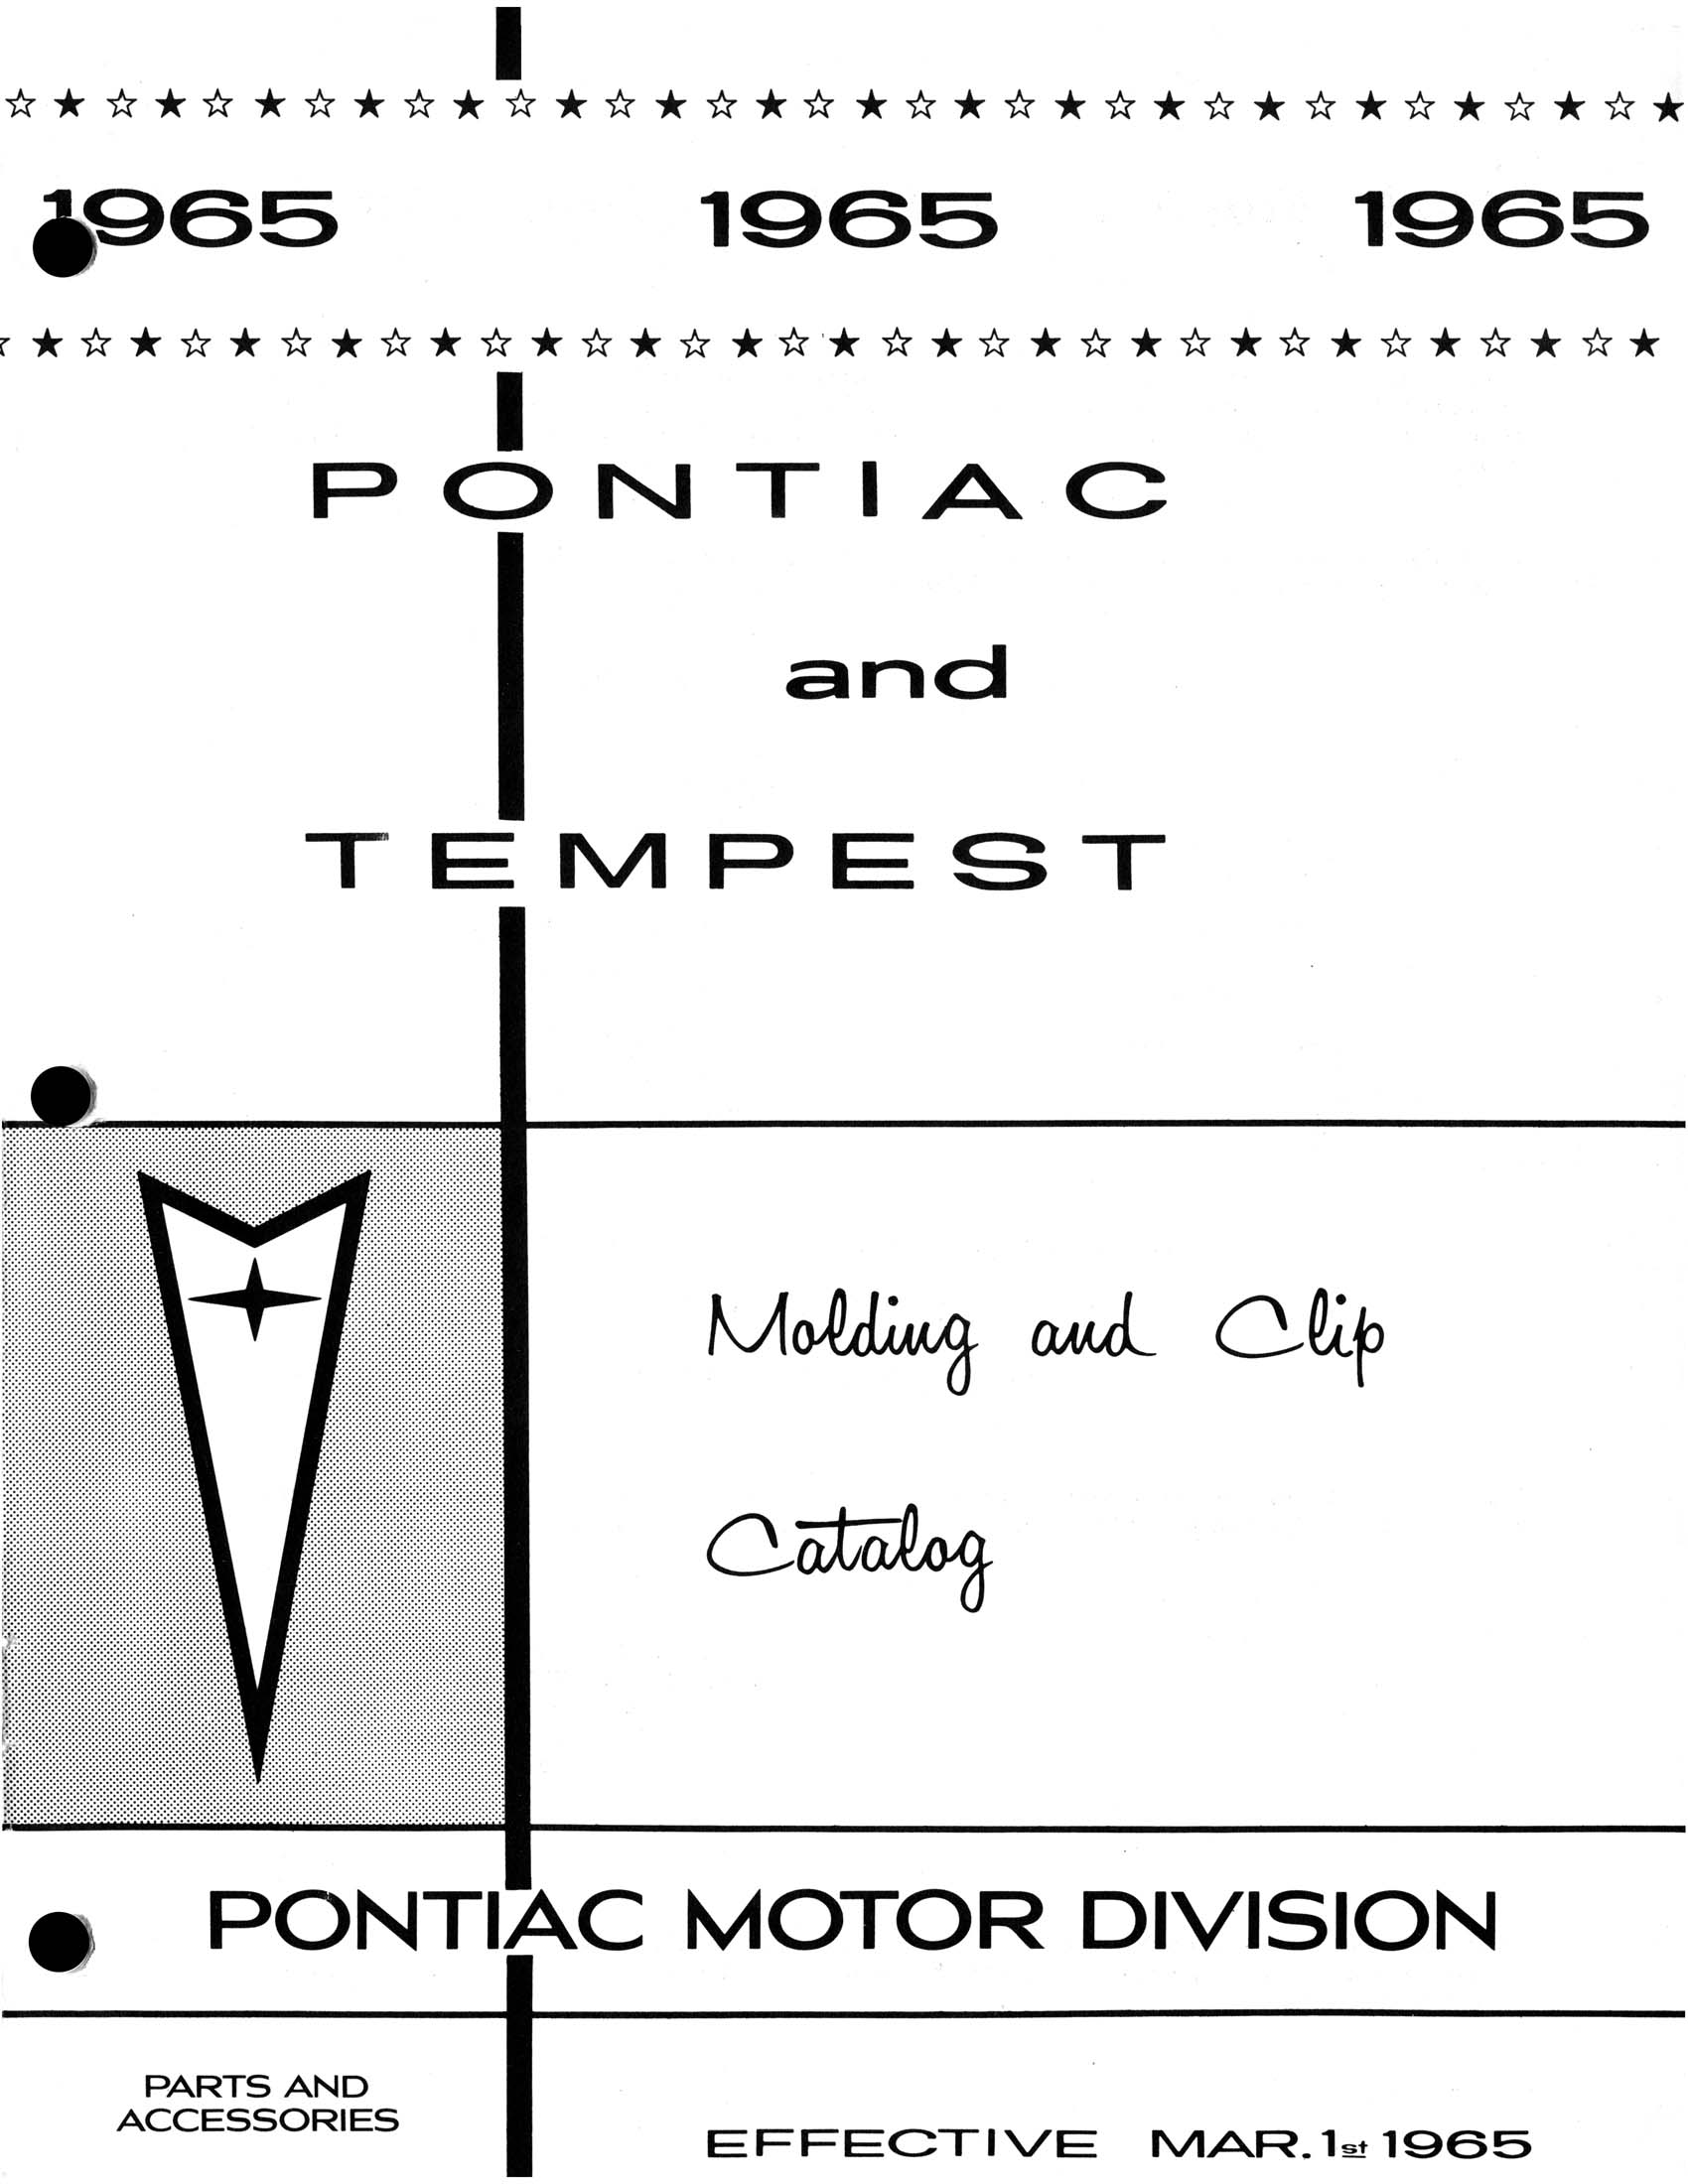 1965_Pontiac_Molding_and_Clip_Catalog-01